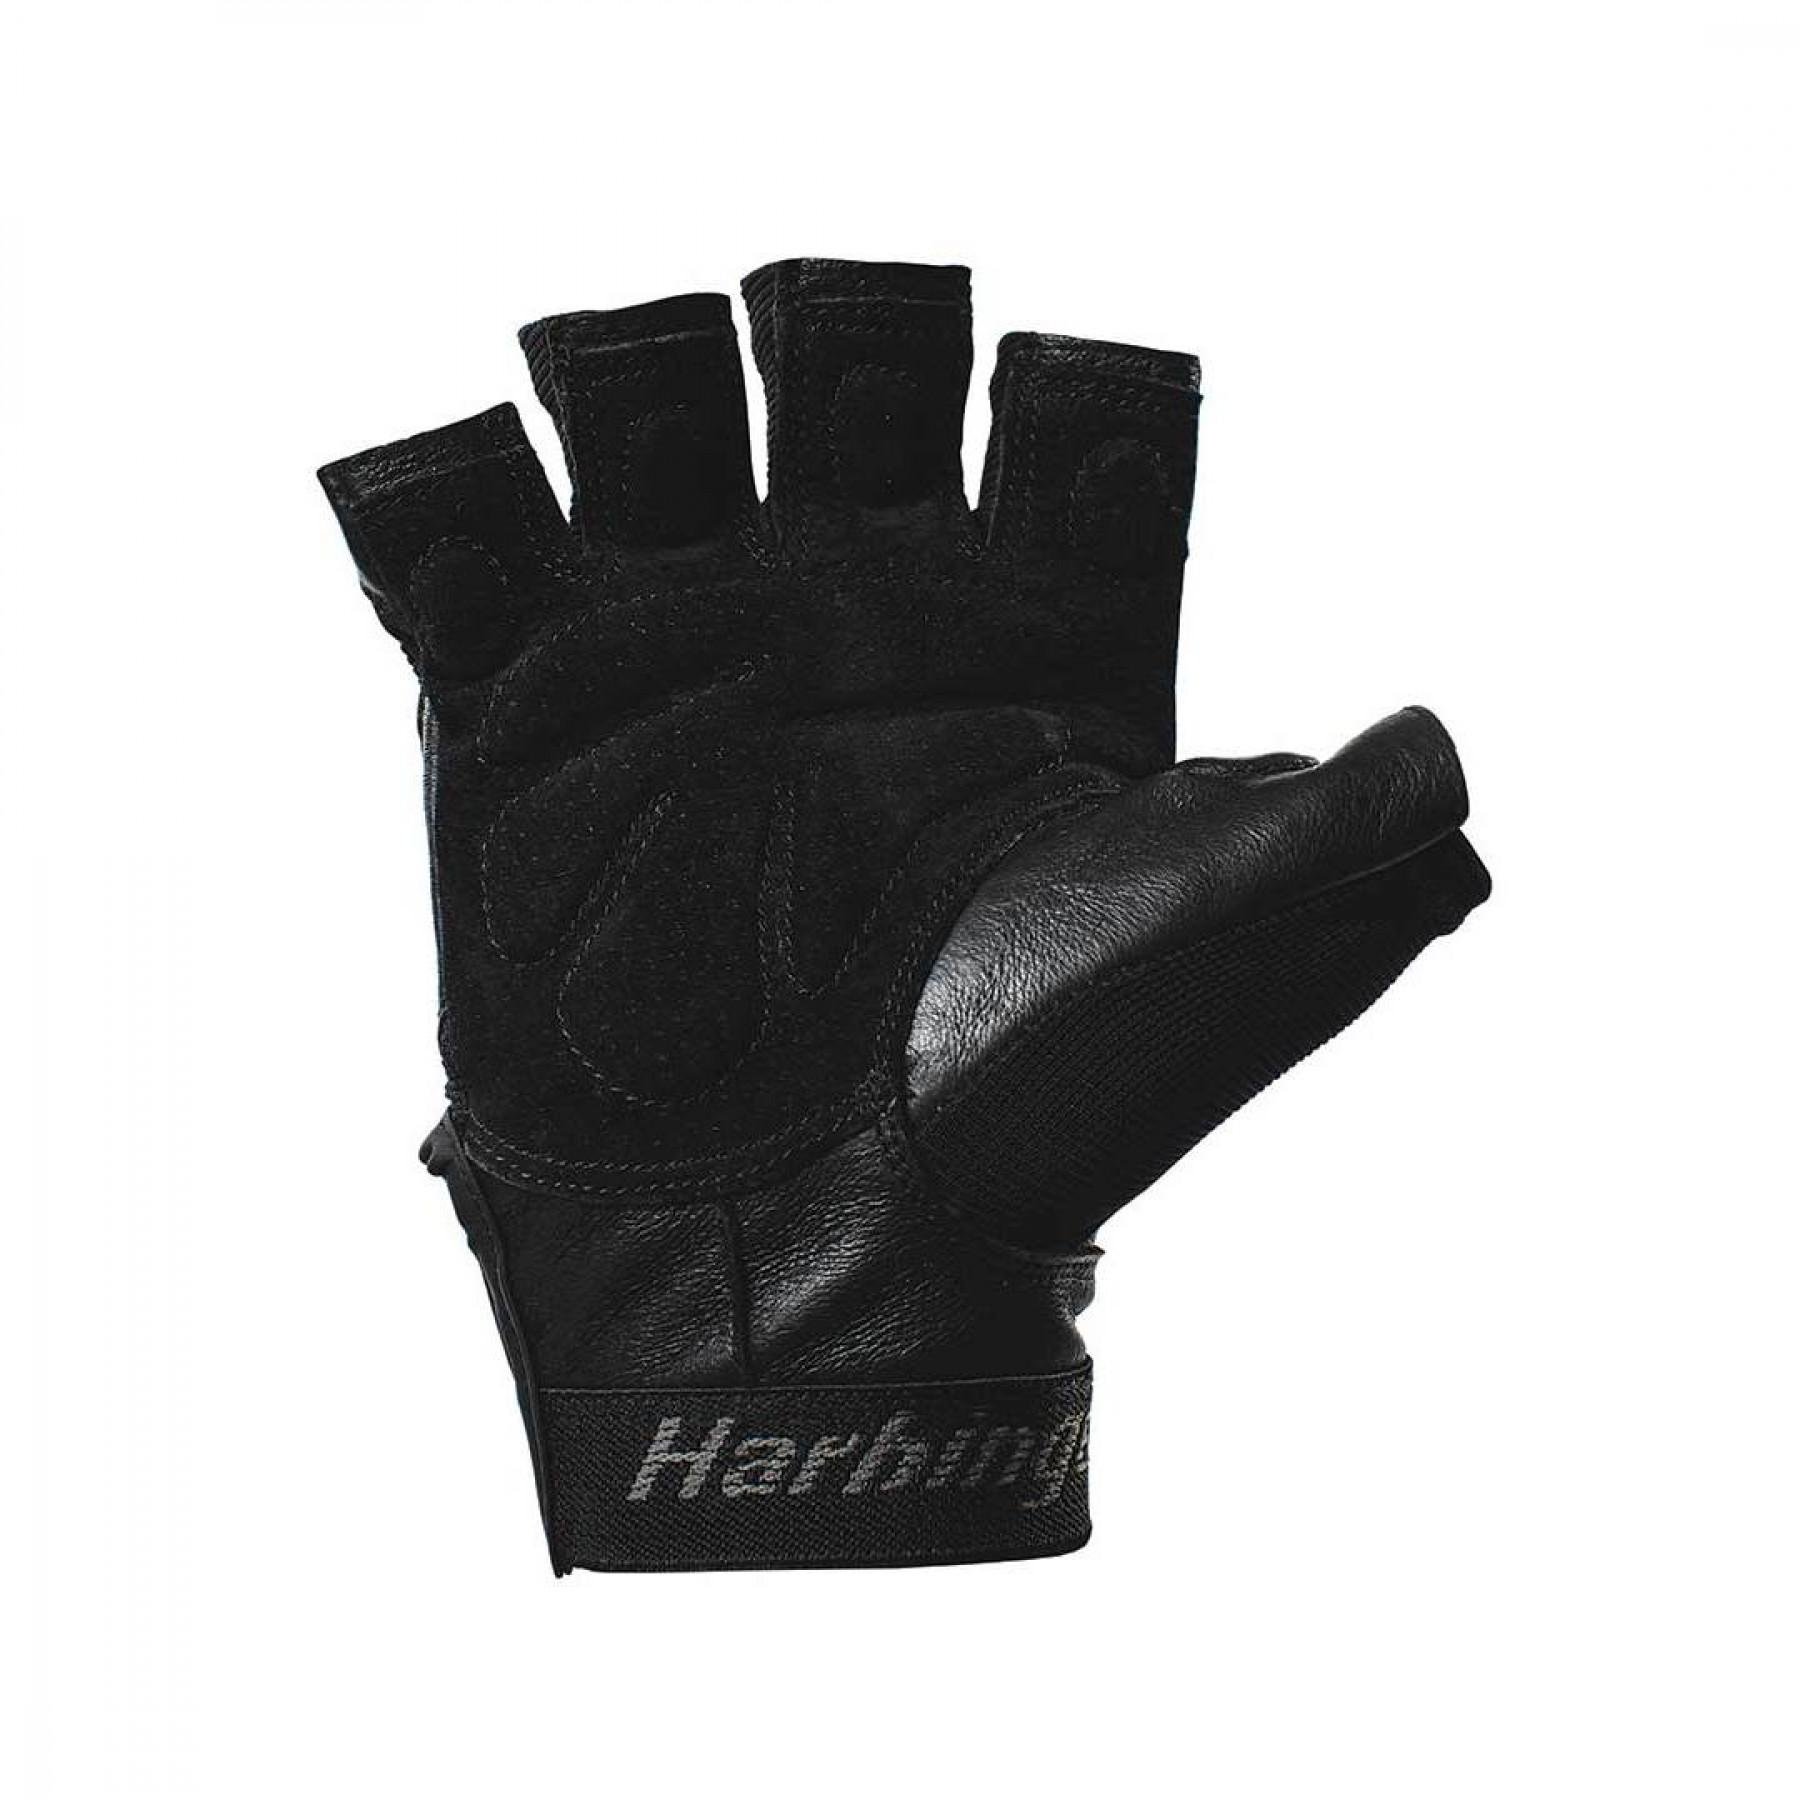 Handske Harbinger Training Grip